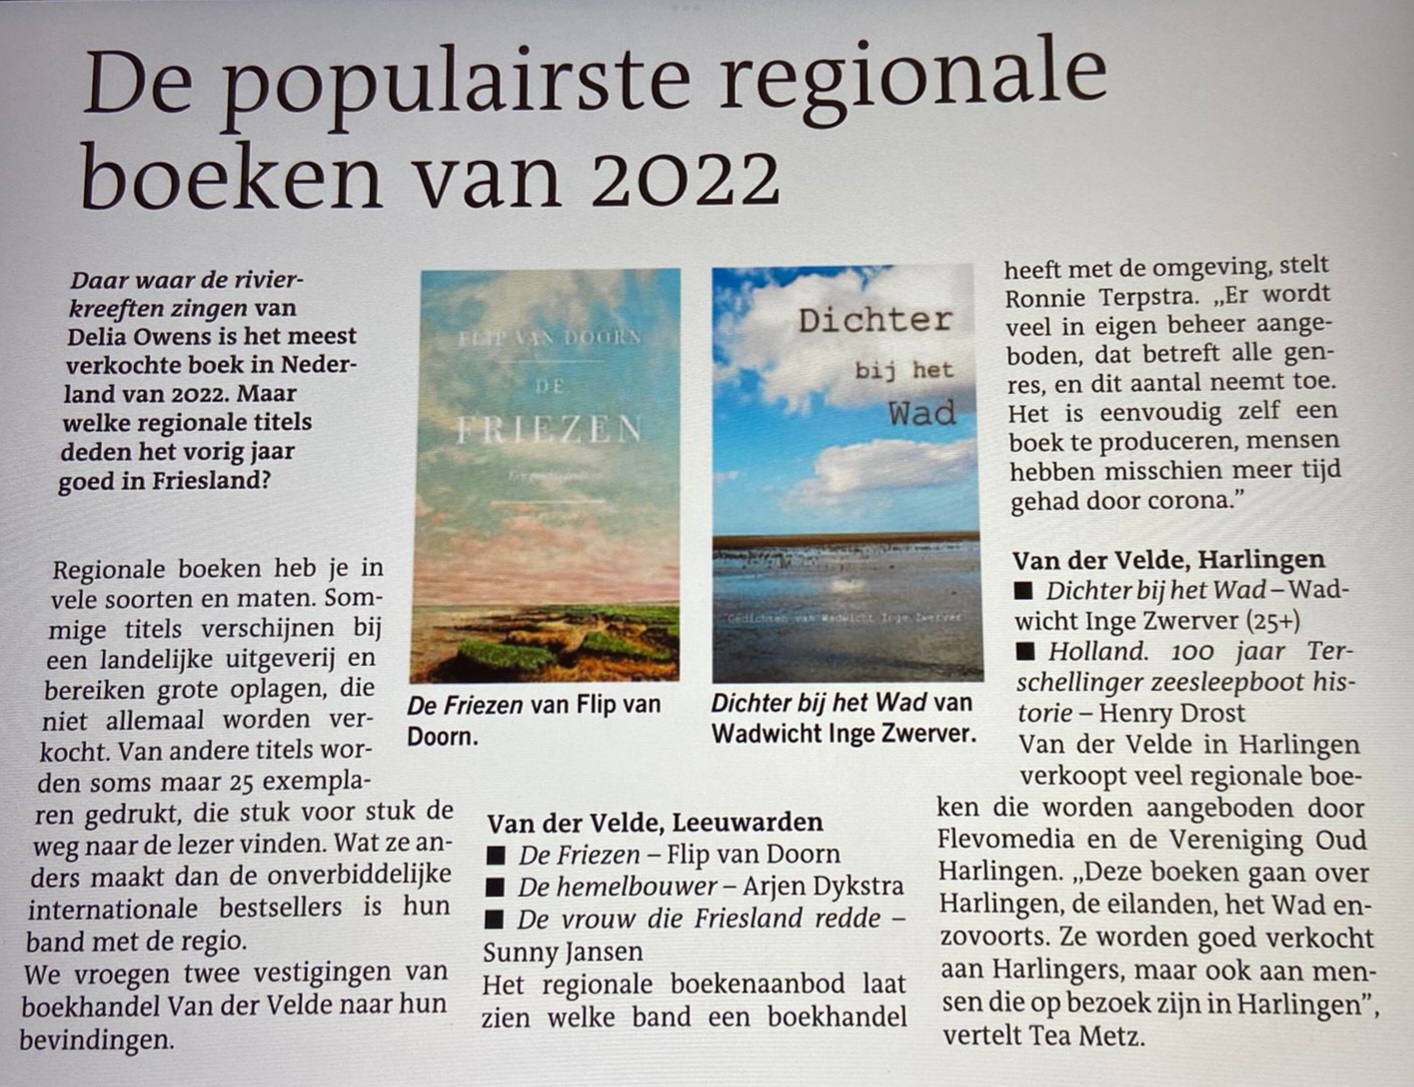 Populairste regionale boek 2022